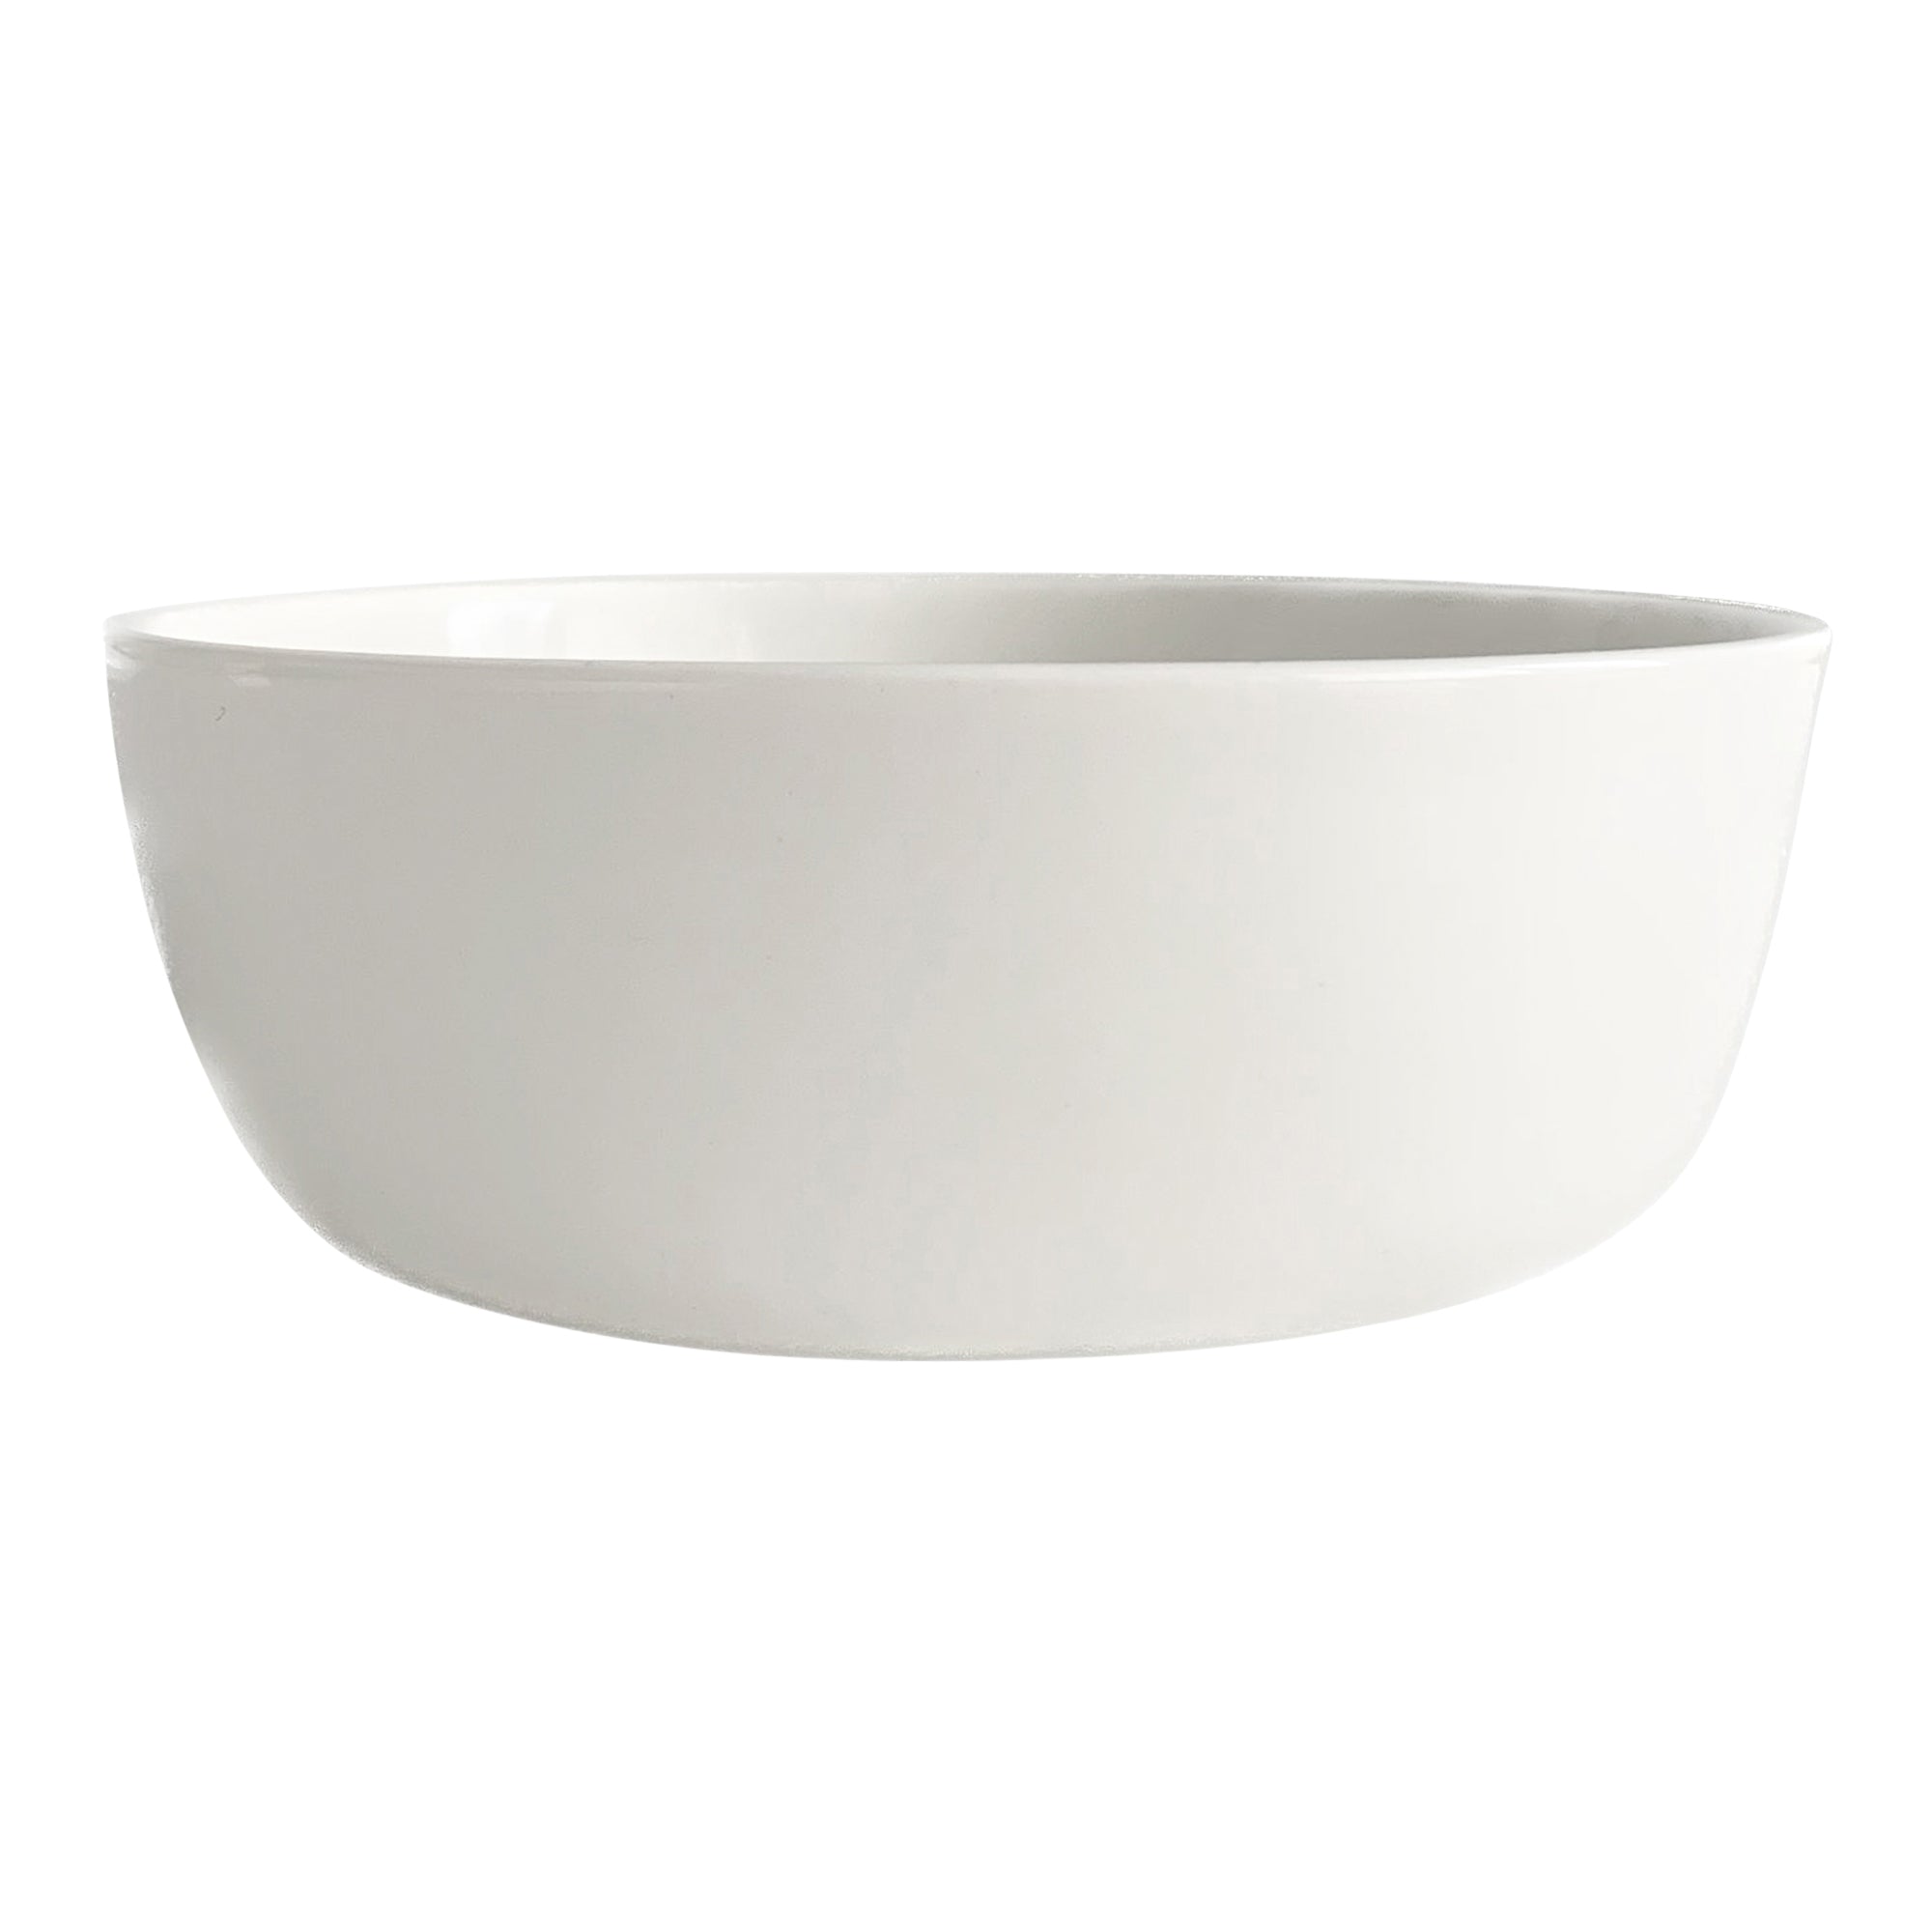 Stolt Porcelain Coupe Bowl 5.4" / 15.6 oz